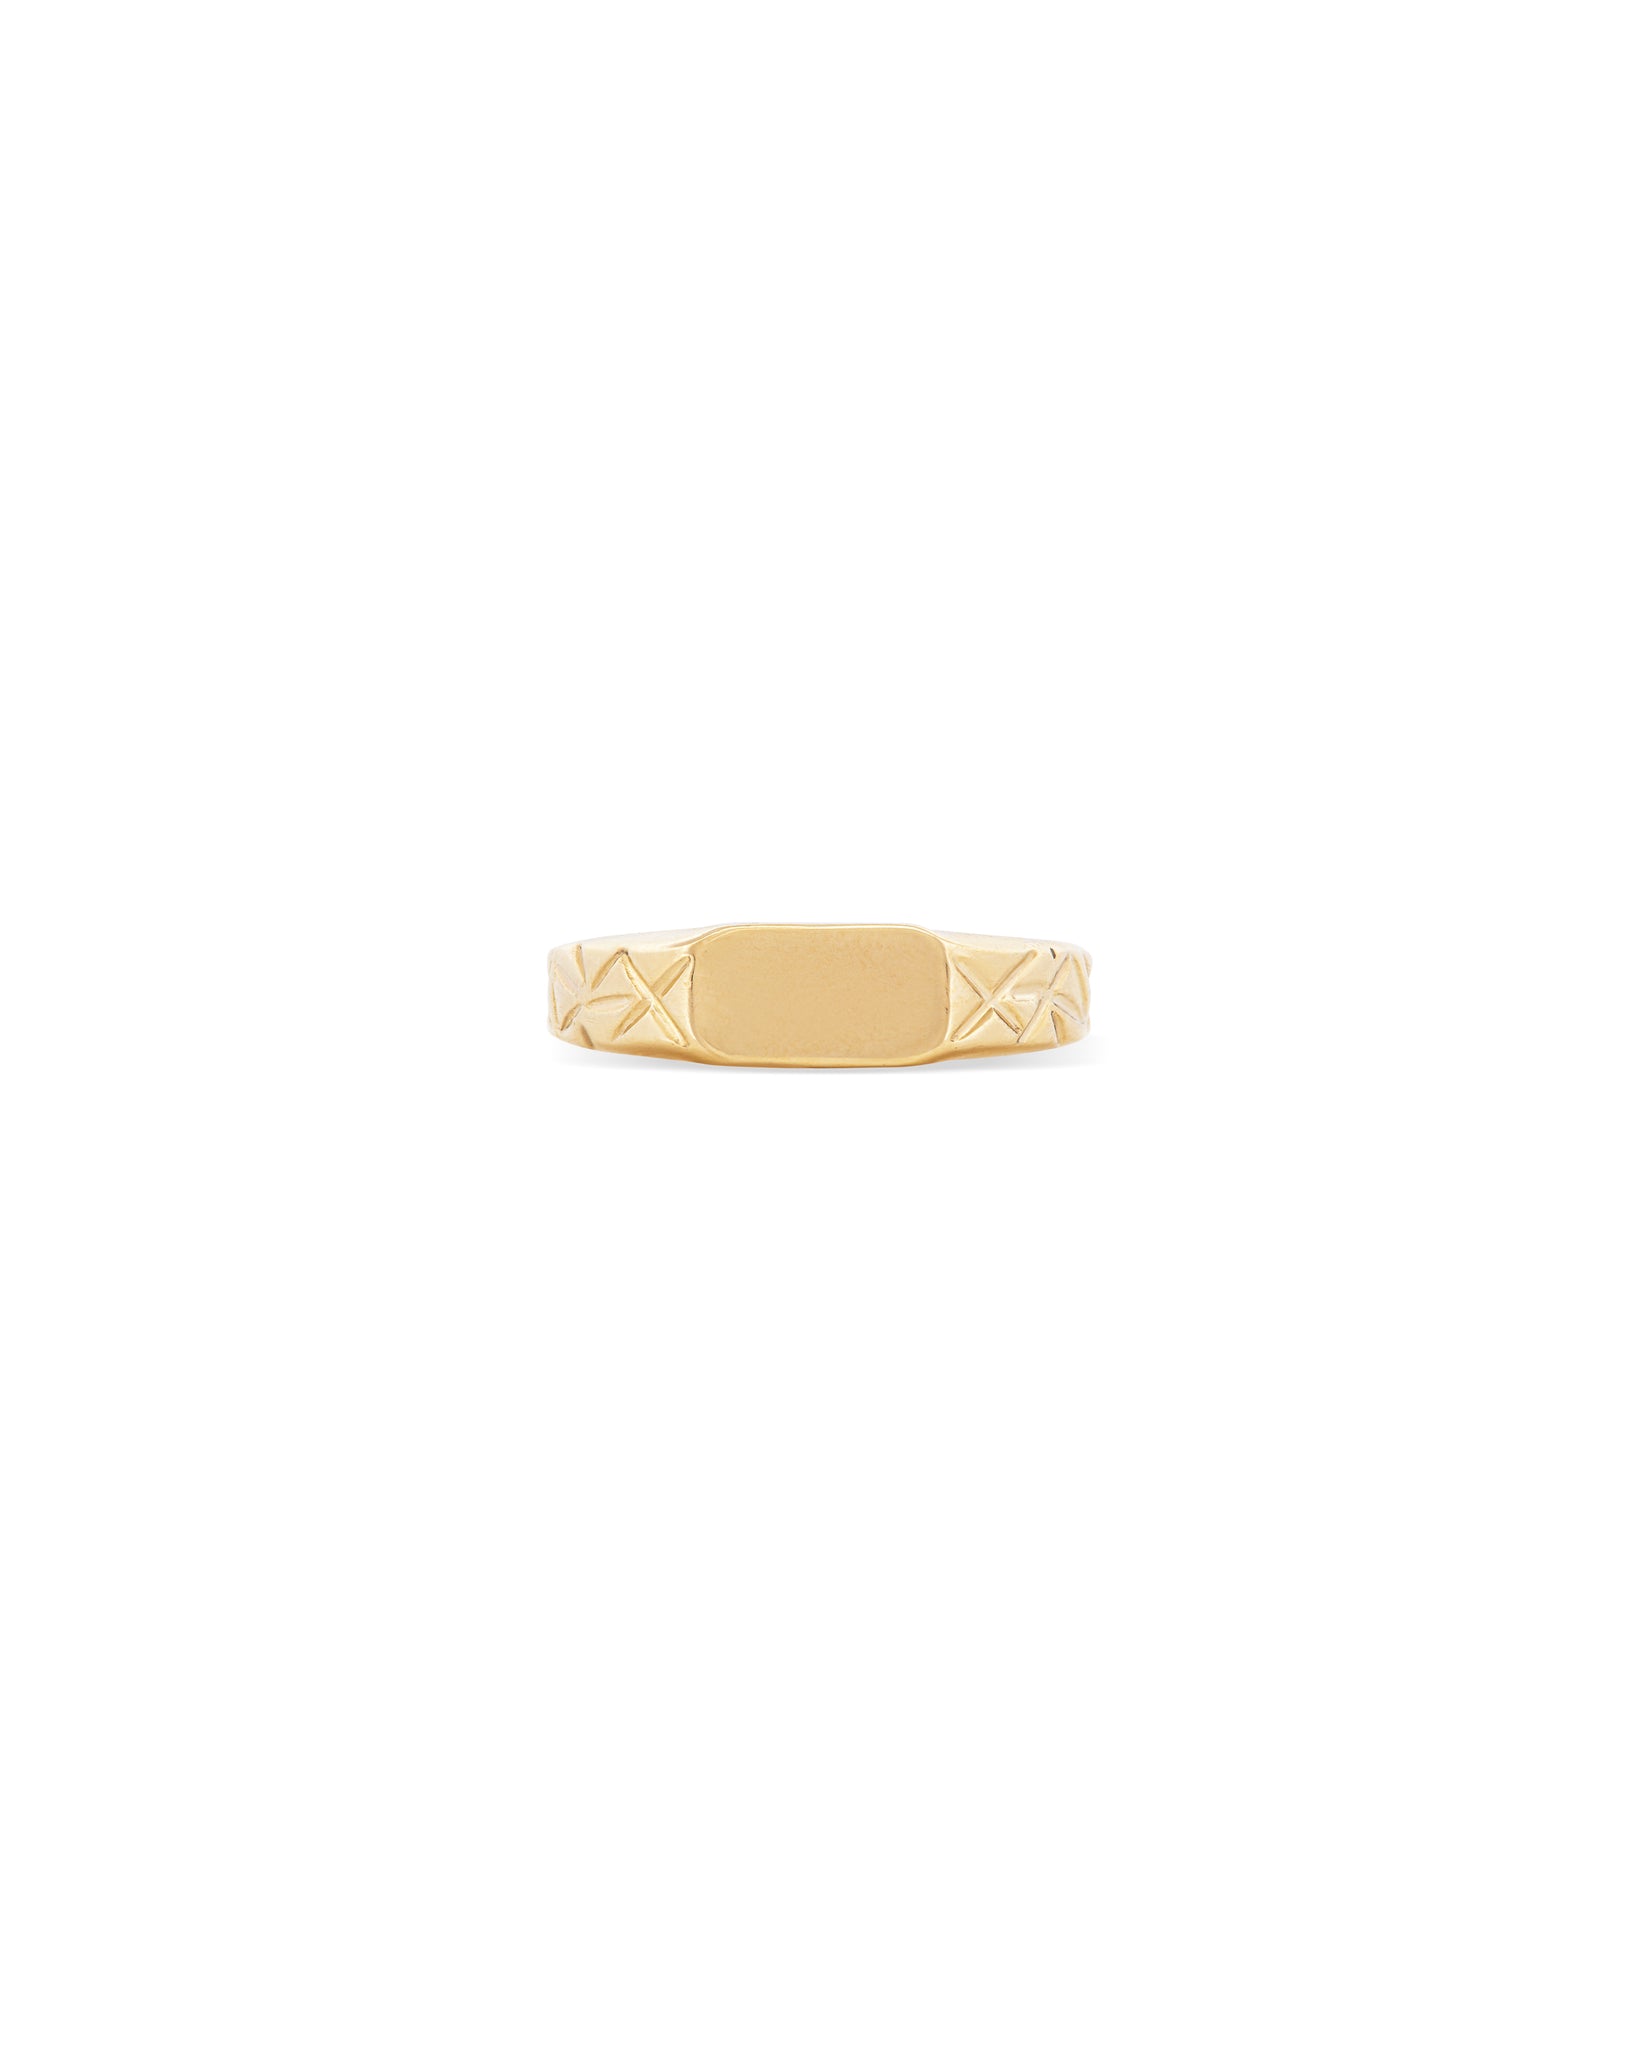 MIRROR 18k Gold Signet Ring